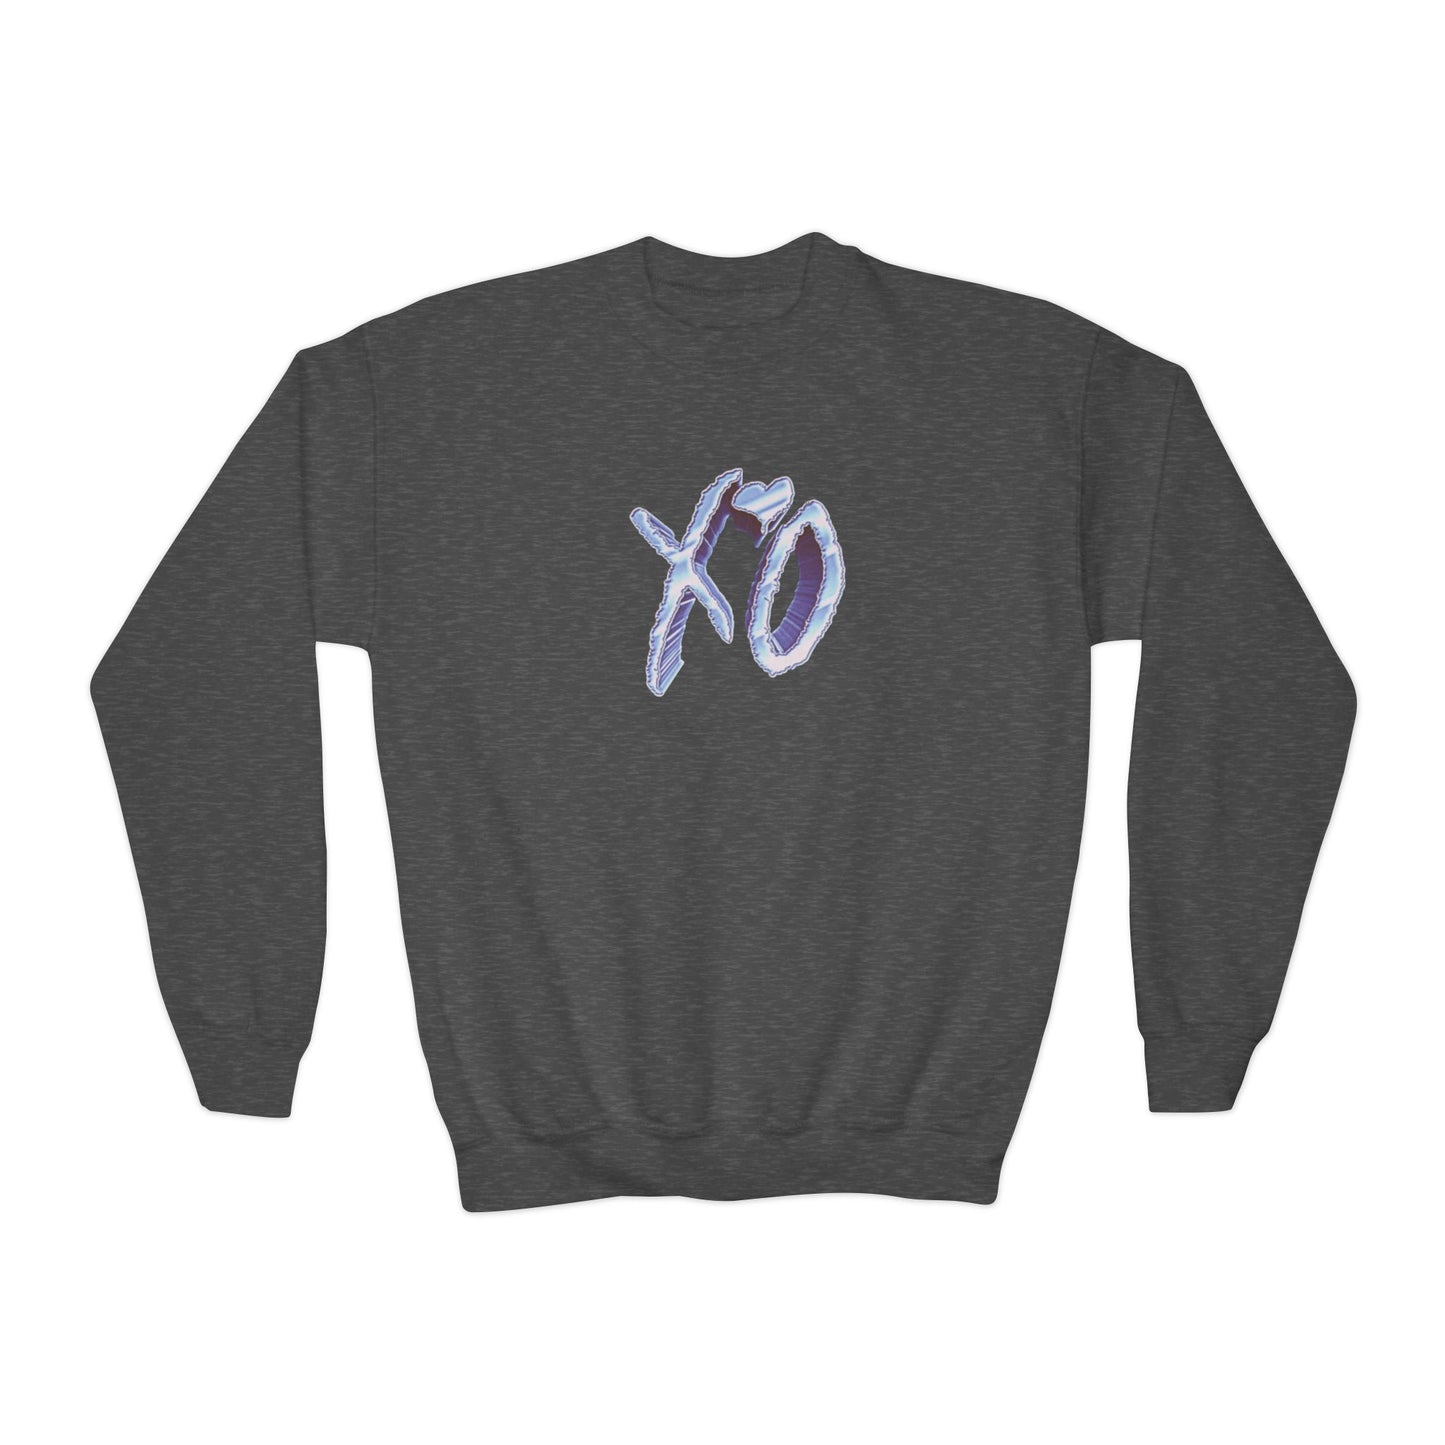 The Weeknd XO Youth Sweatshirt